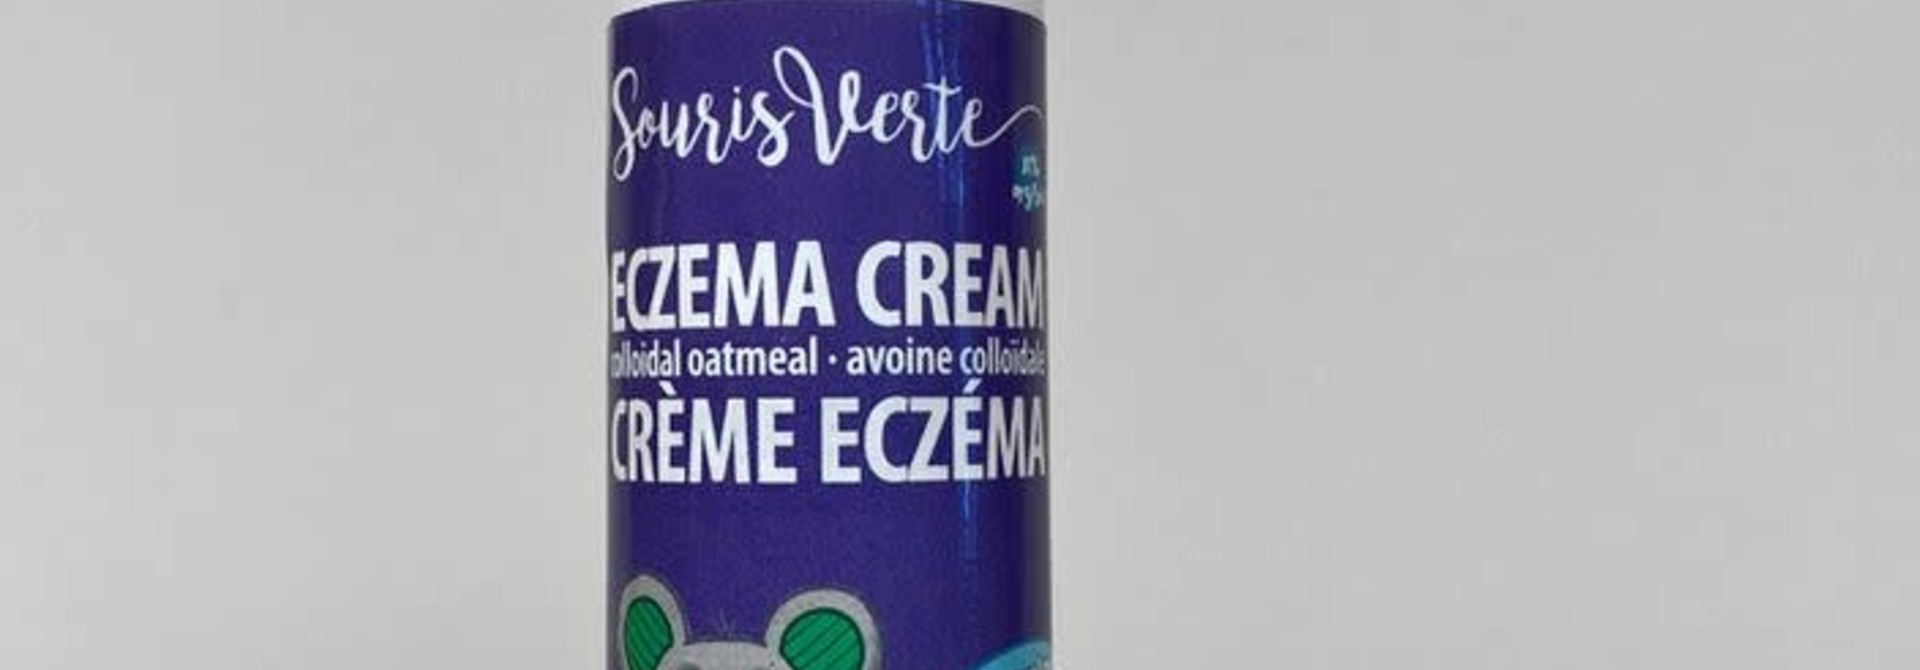 Crème ECZEMA Avoine Colloïdale